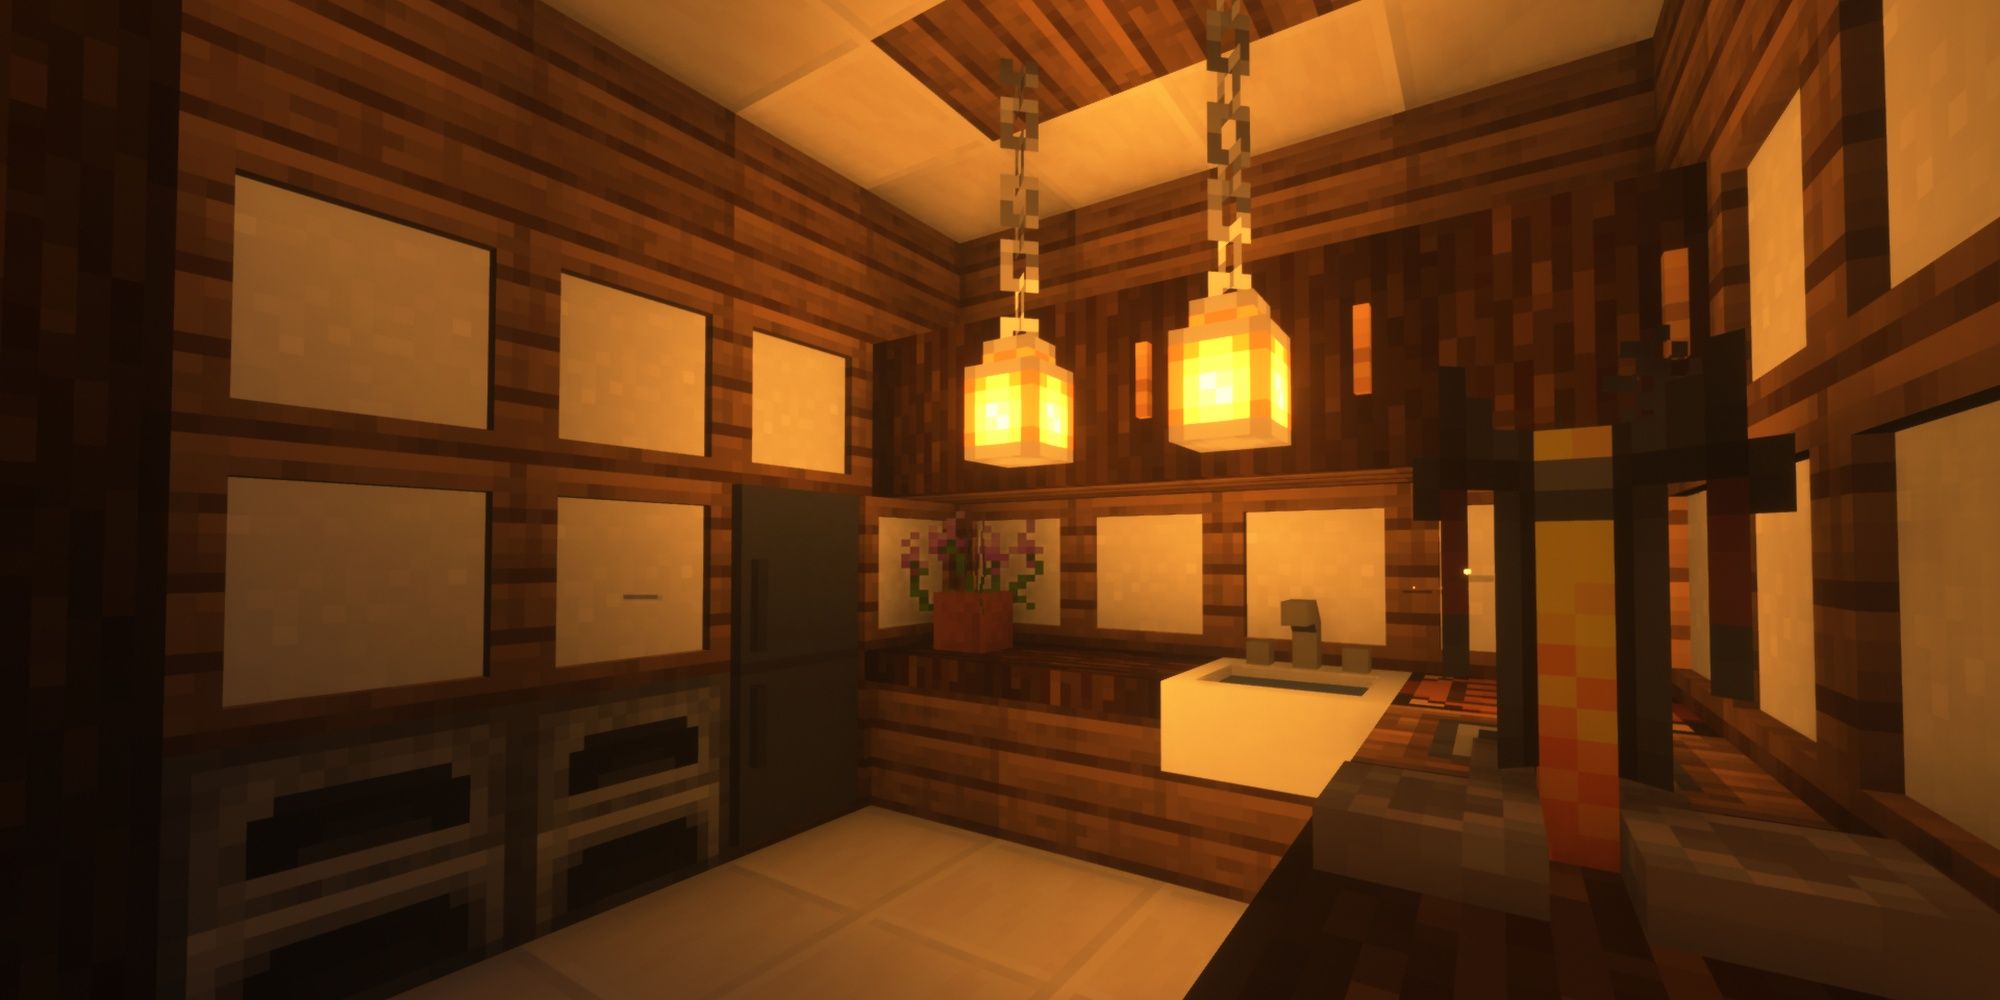 A kitchen in Minecraft lit by lanterns on chains